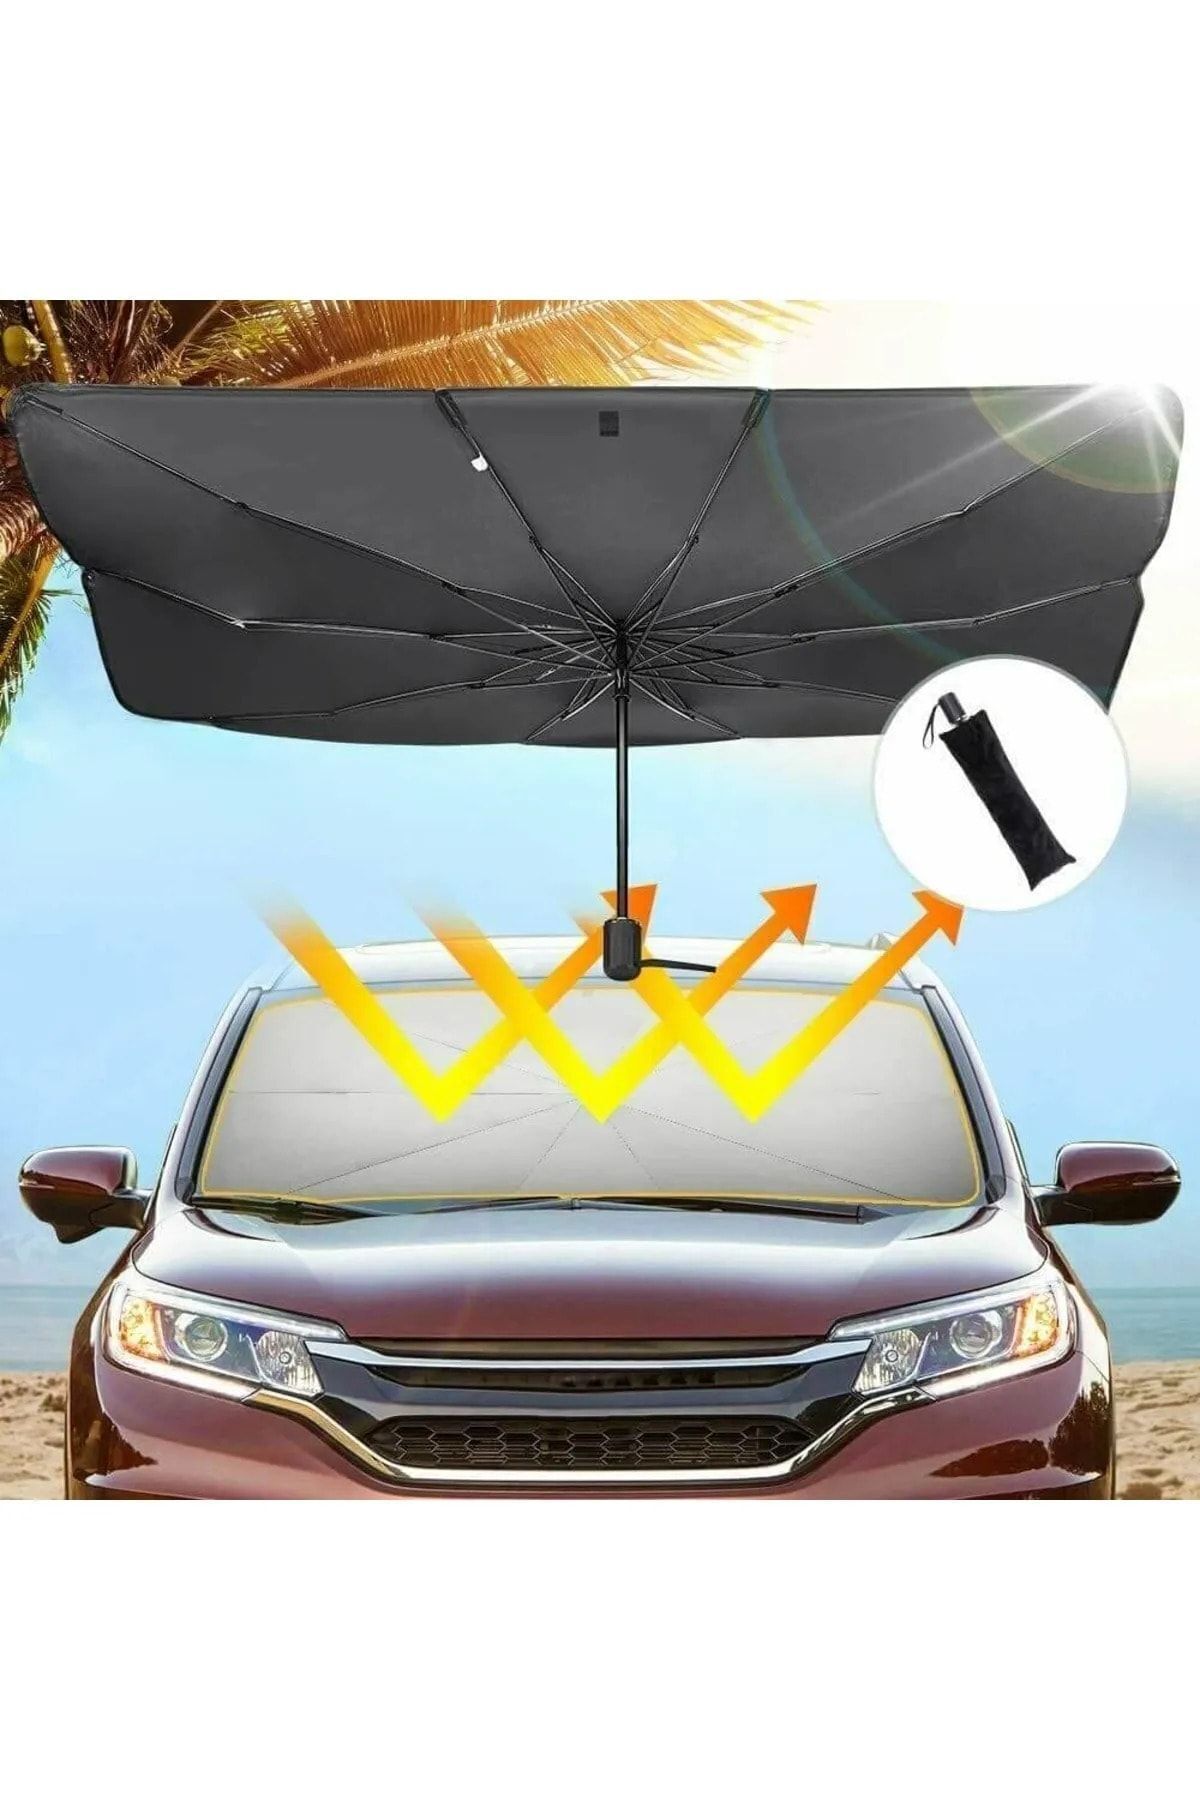 Universal Renault Kadjar Araba Ön Cam Güneşlik Katlanabilir Güneşlik Şemsiye Ön Cam Gölgelik